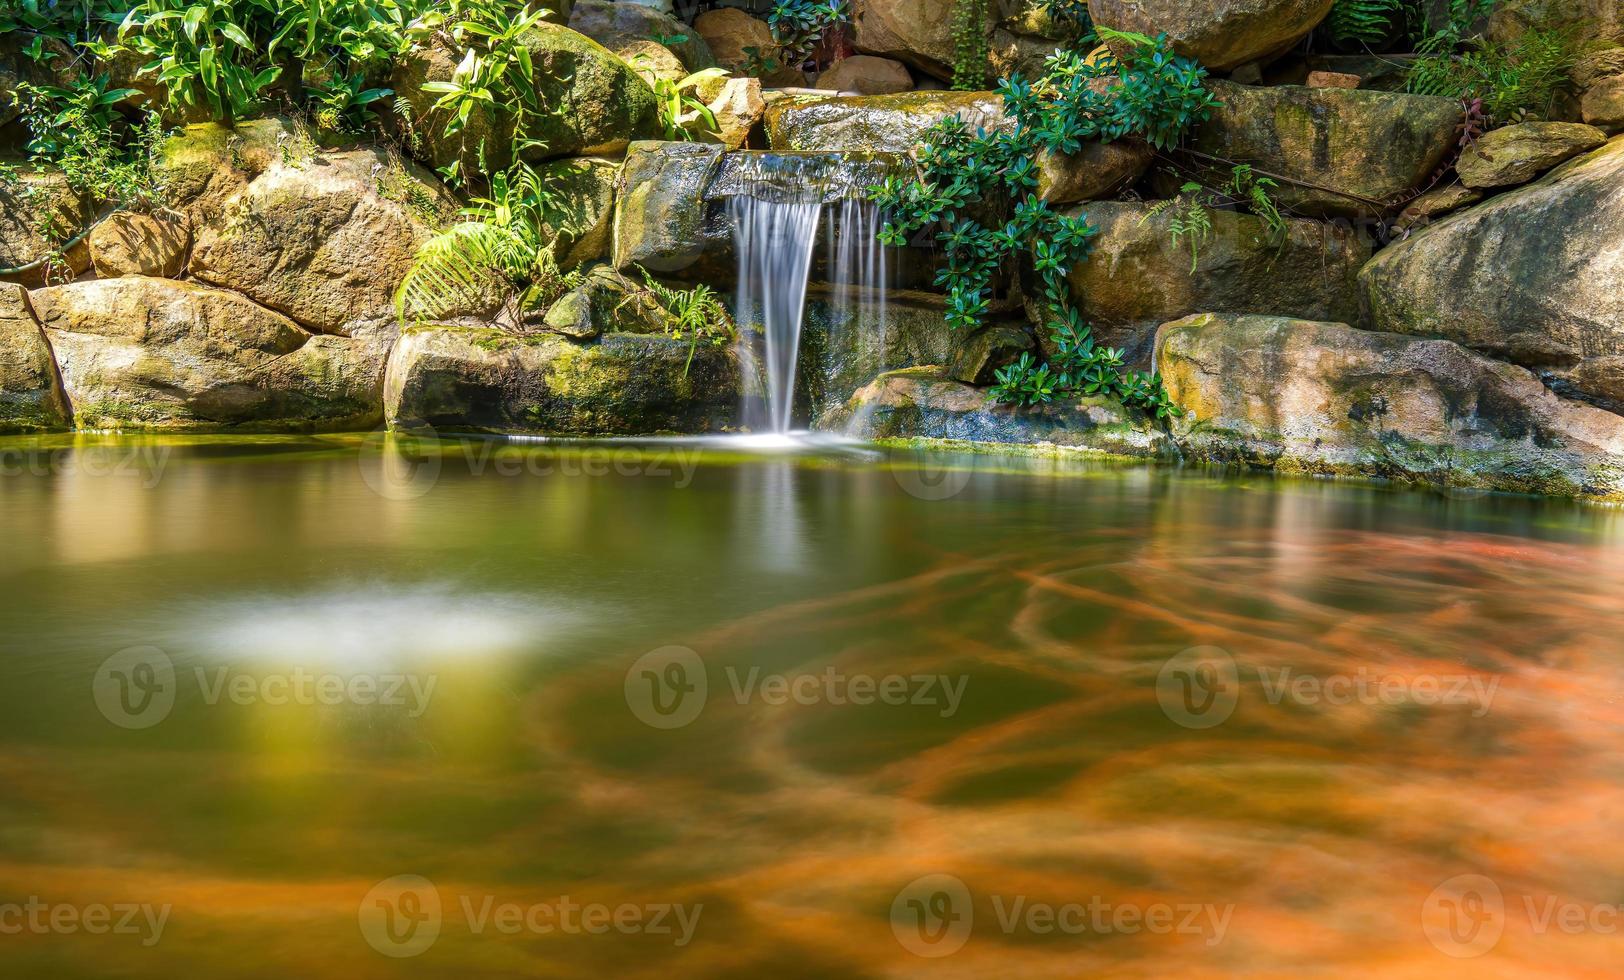 cascades du jardin japonais. étang de koi tropical vert luxuriant avec cascade de chaque côté. un jardin verdoyant avec une cascade qui tombe en cascade sur les pierres rocheuses. cadre zen et paisible. photo